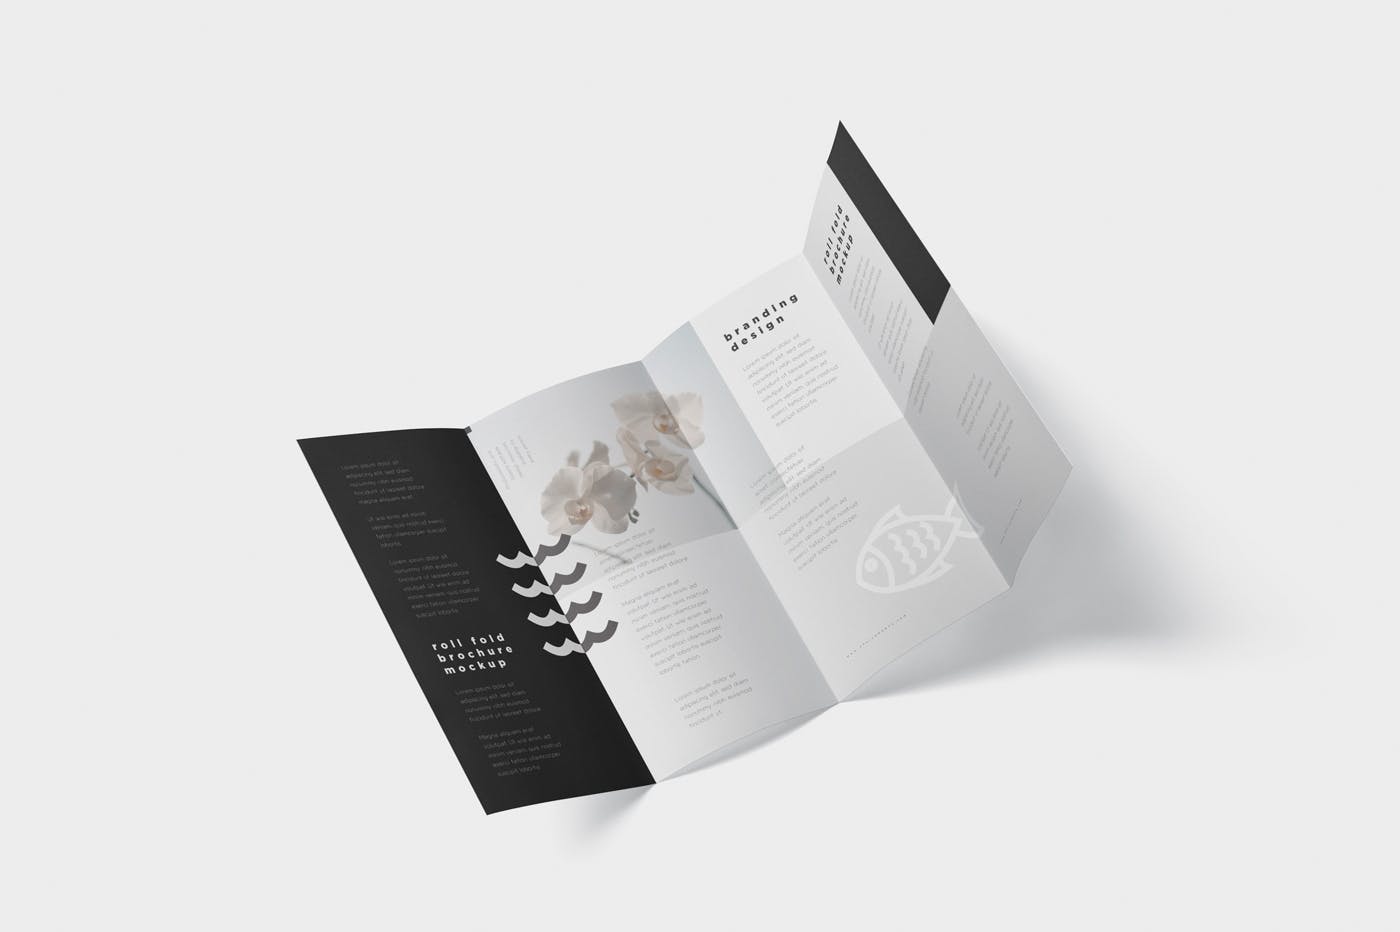 折叠设计风格企业传单/宣传册设计样机蚂蚁素材精选 Roll-Fold Brochure Mockup – DL DIN Lang Size插图(5)